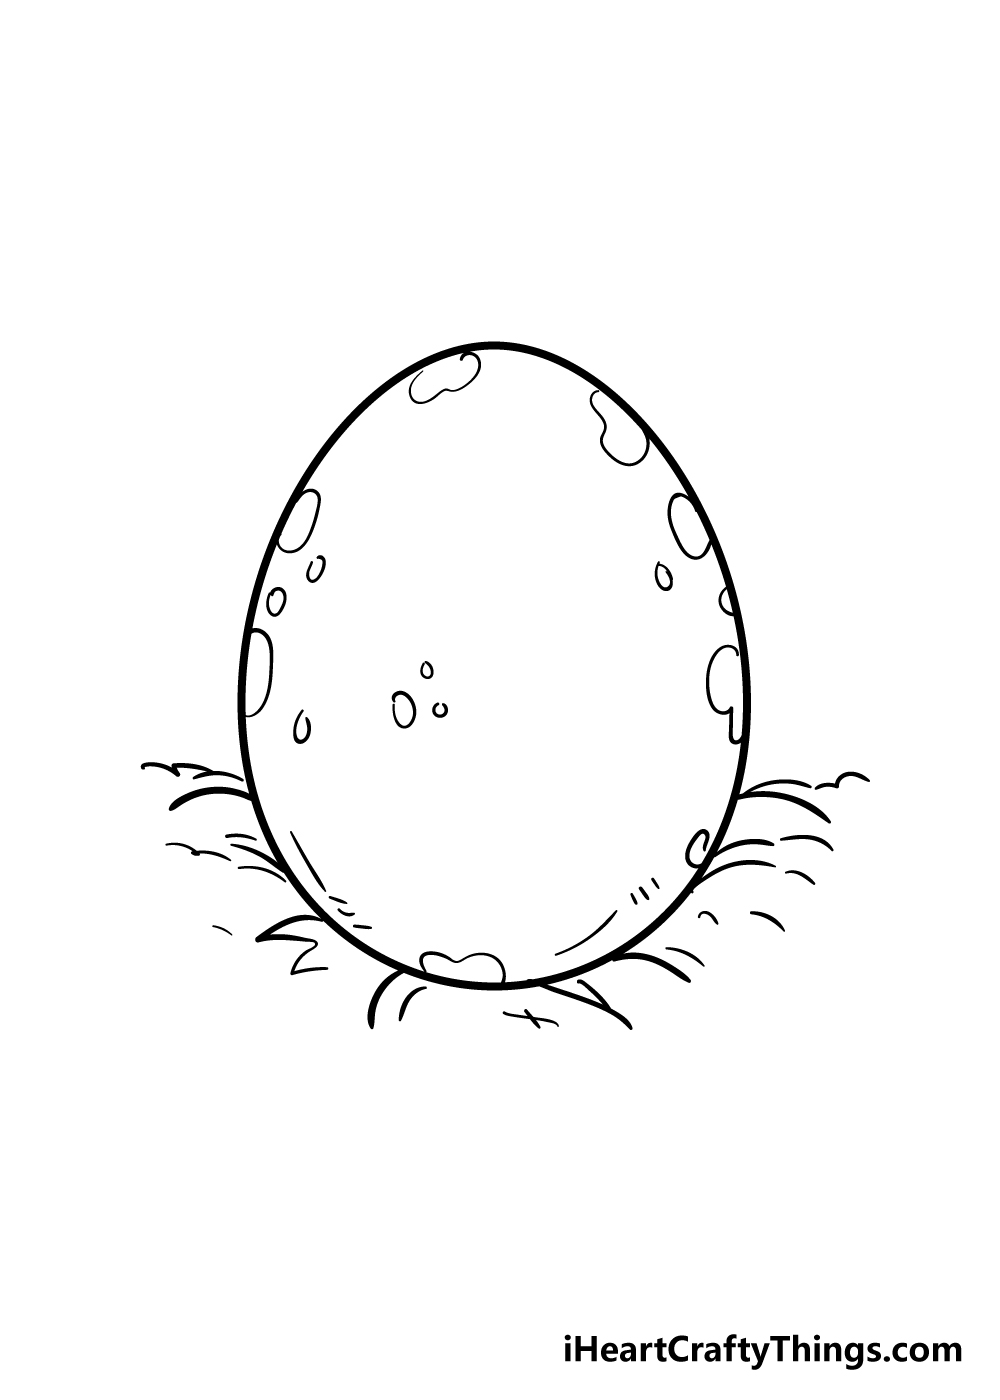 6 4 - Hướng dẫn cách vẽ quả trứng đơn giản và giản dị với 7 bước cơ bản